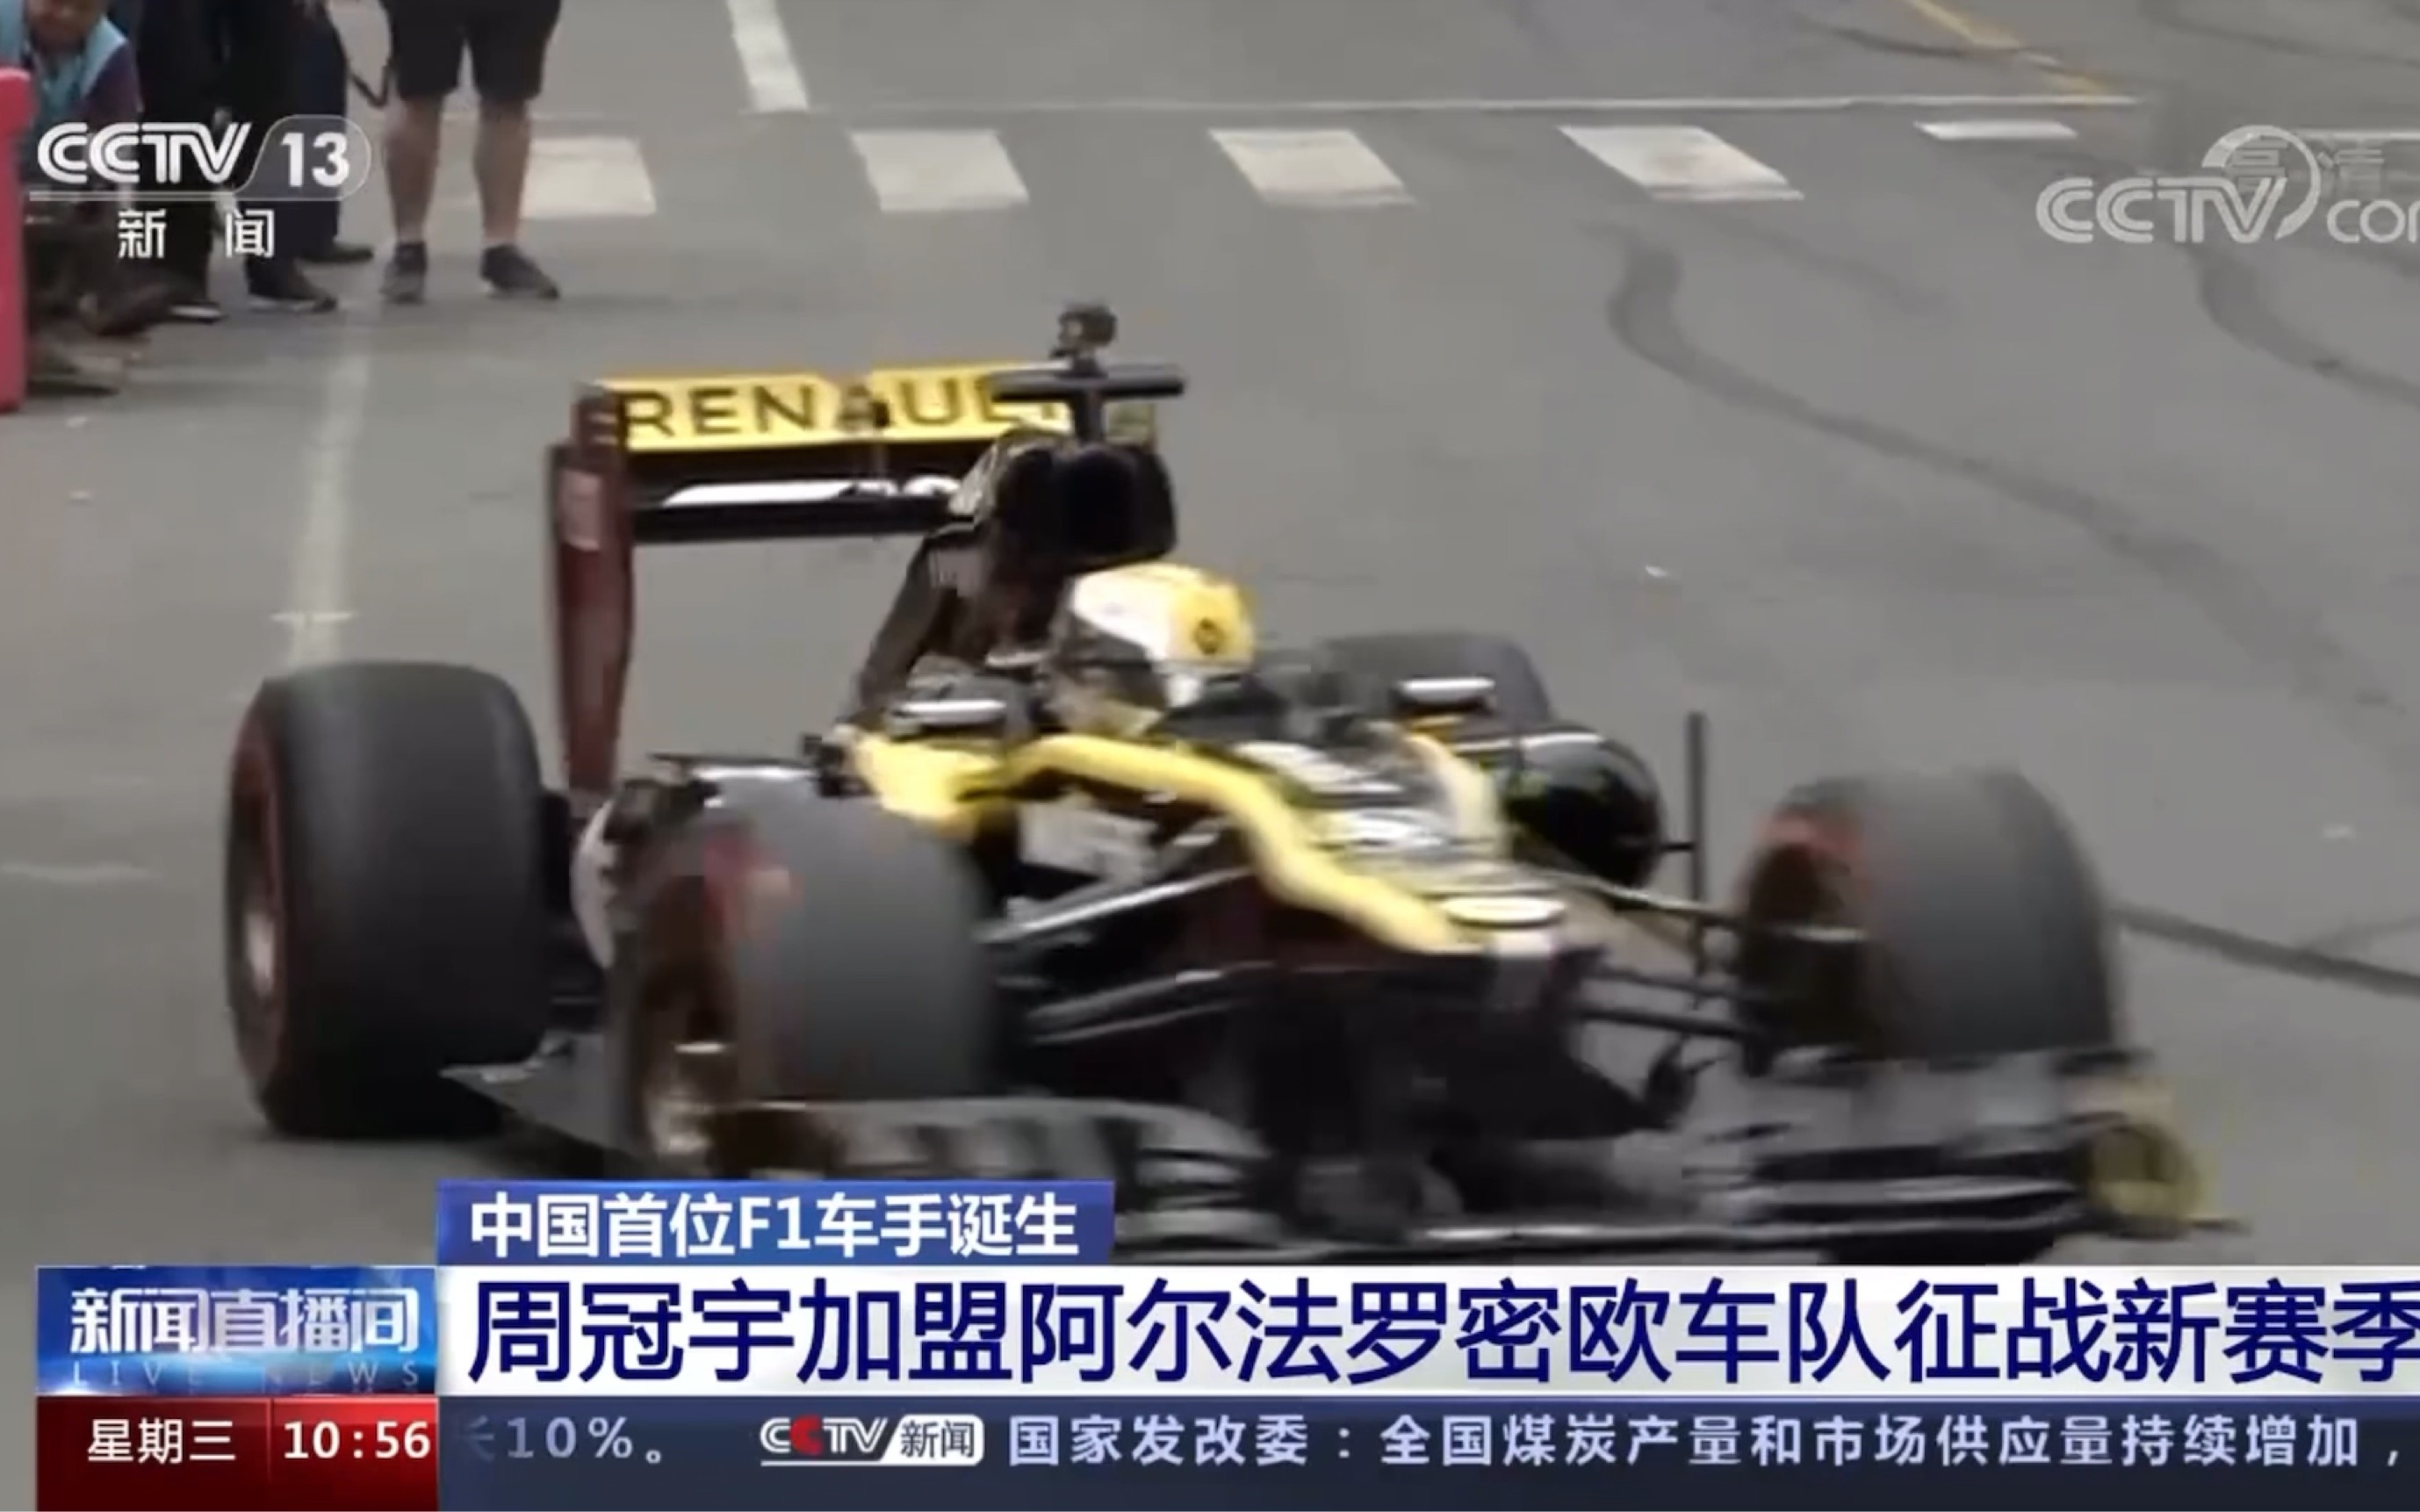 【周冠宇】排面！CCTV13报道周冠宇成为中国首位F1正式车手